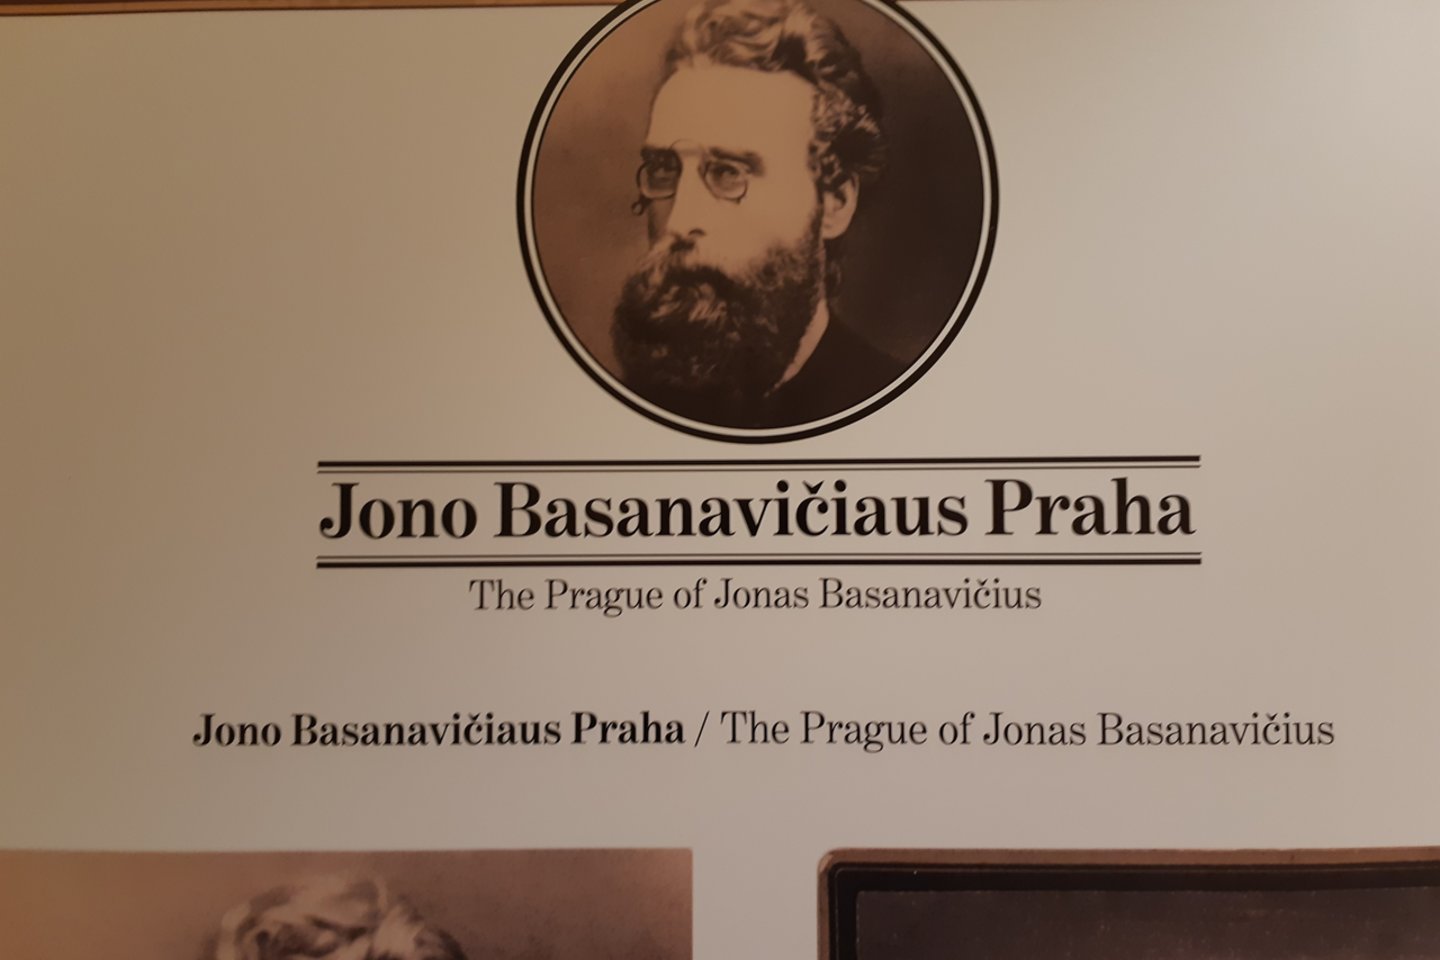  Vilniaus universiteto bibliotekoje surengtos parodos“Jono Basanavičiaus Praha“ eksponatas.